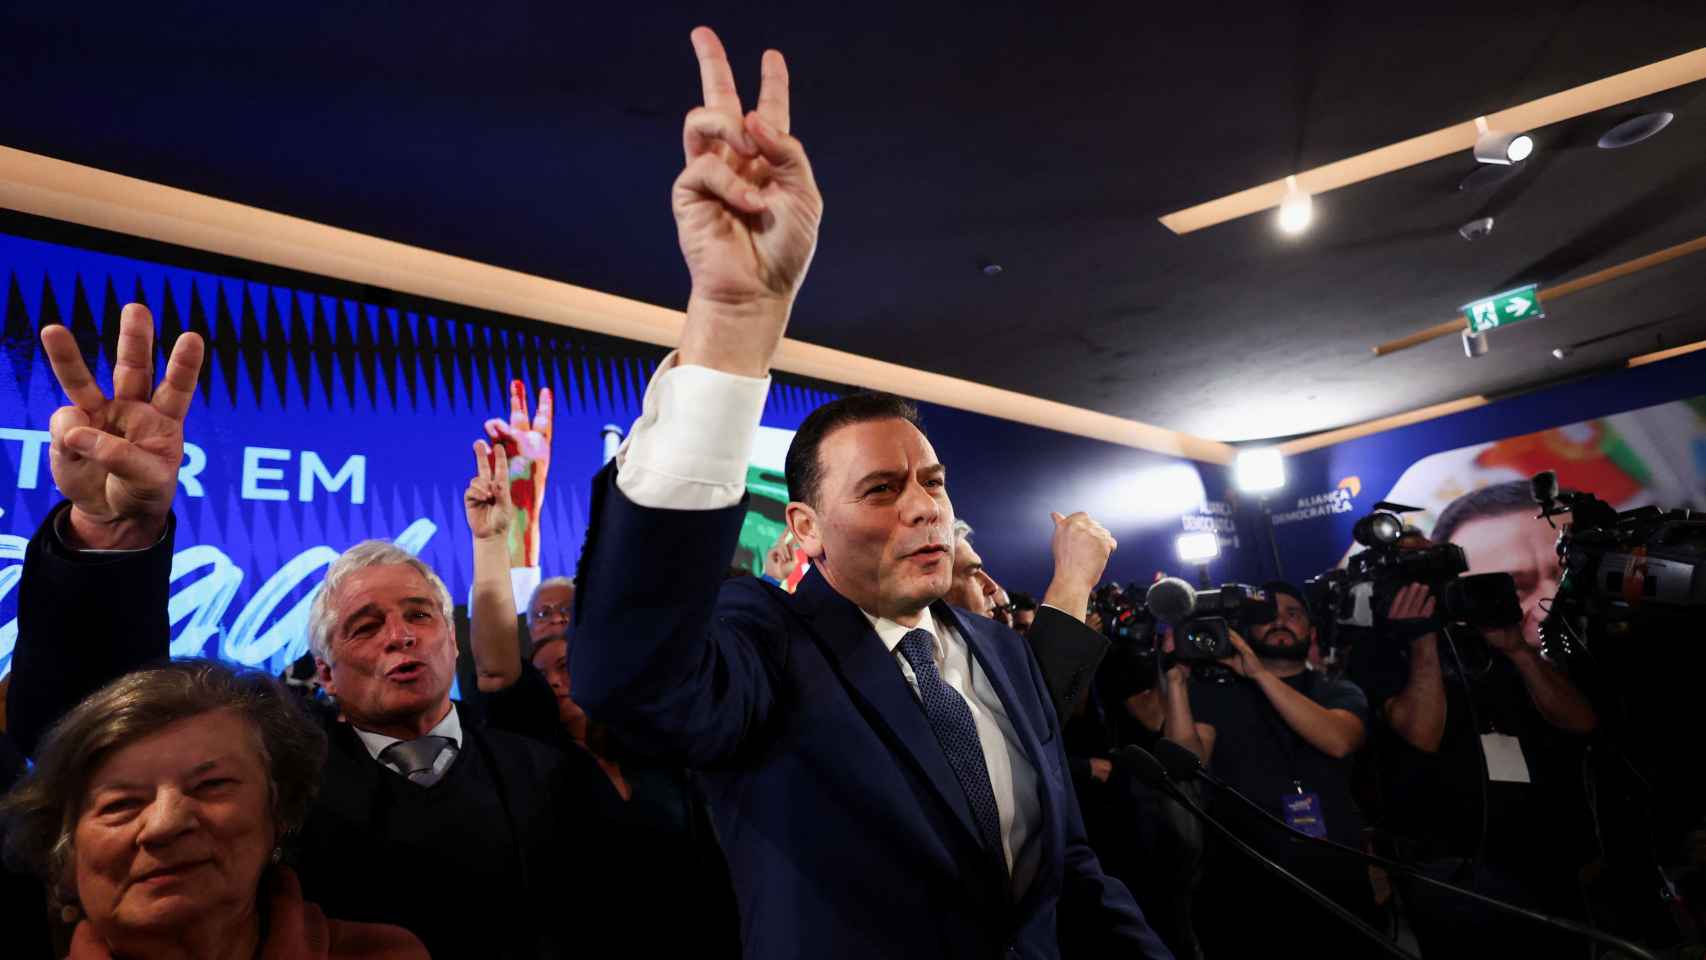 Centro-direita vence eleições em Portugal e extrema-direita alcança 18%: Montenegro governará